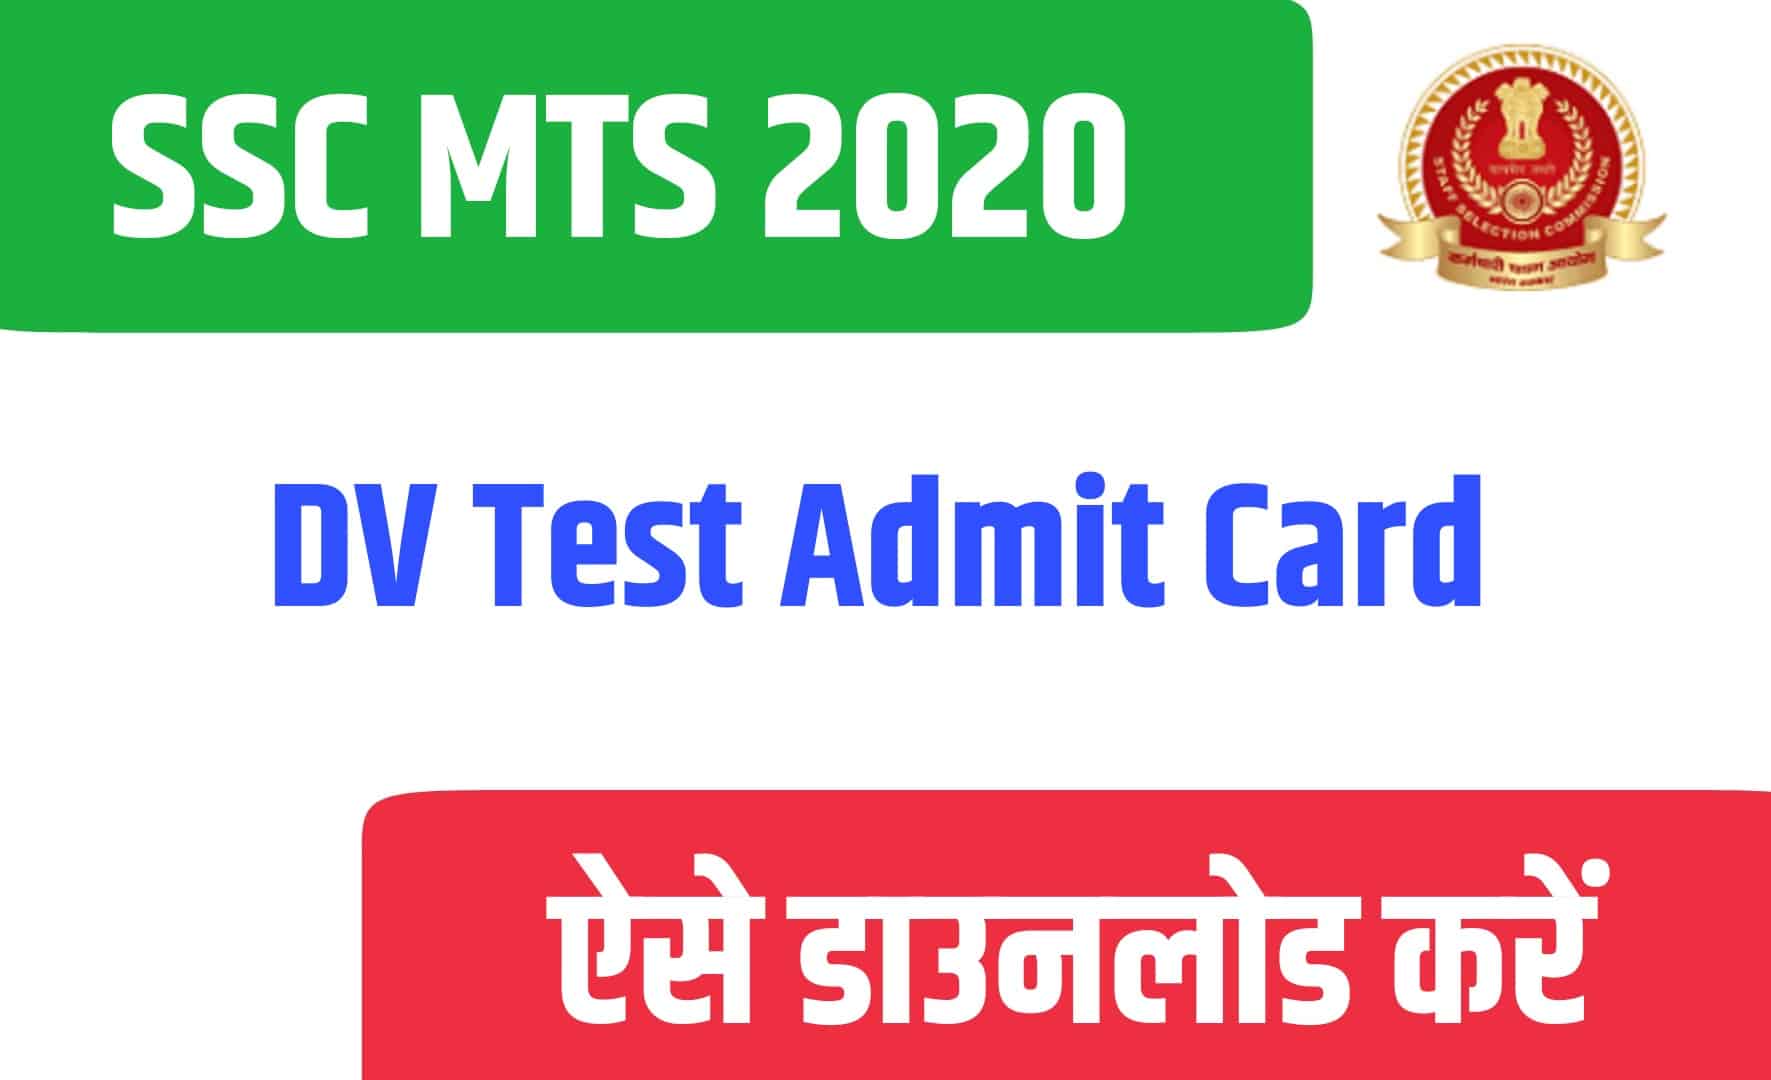 SSC MTS 2020 DV Test Admit Card | MTS दस्तावेज सत्यापन एडमिट कार्ड जारी